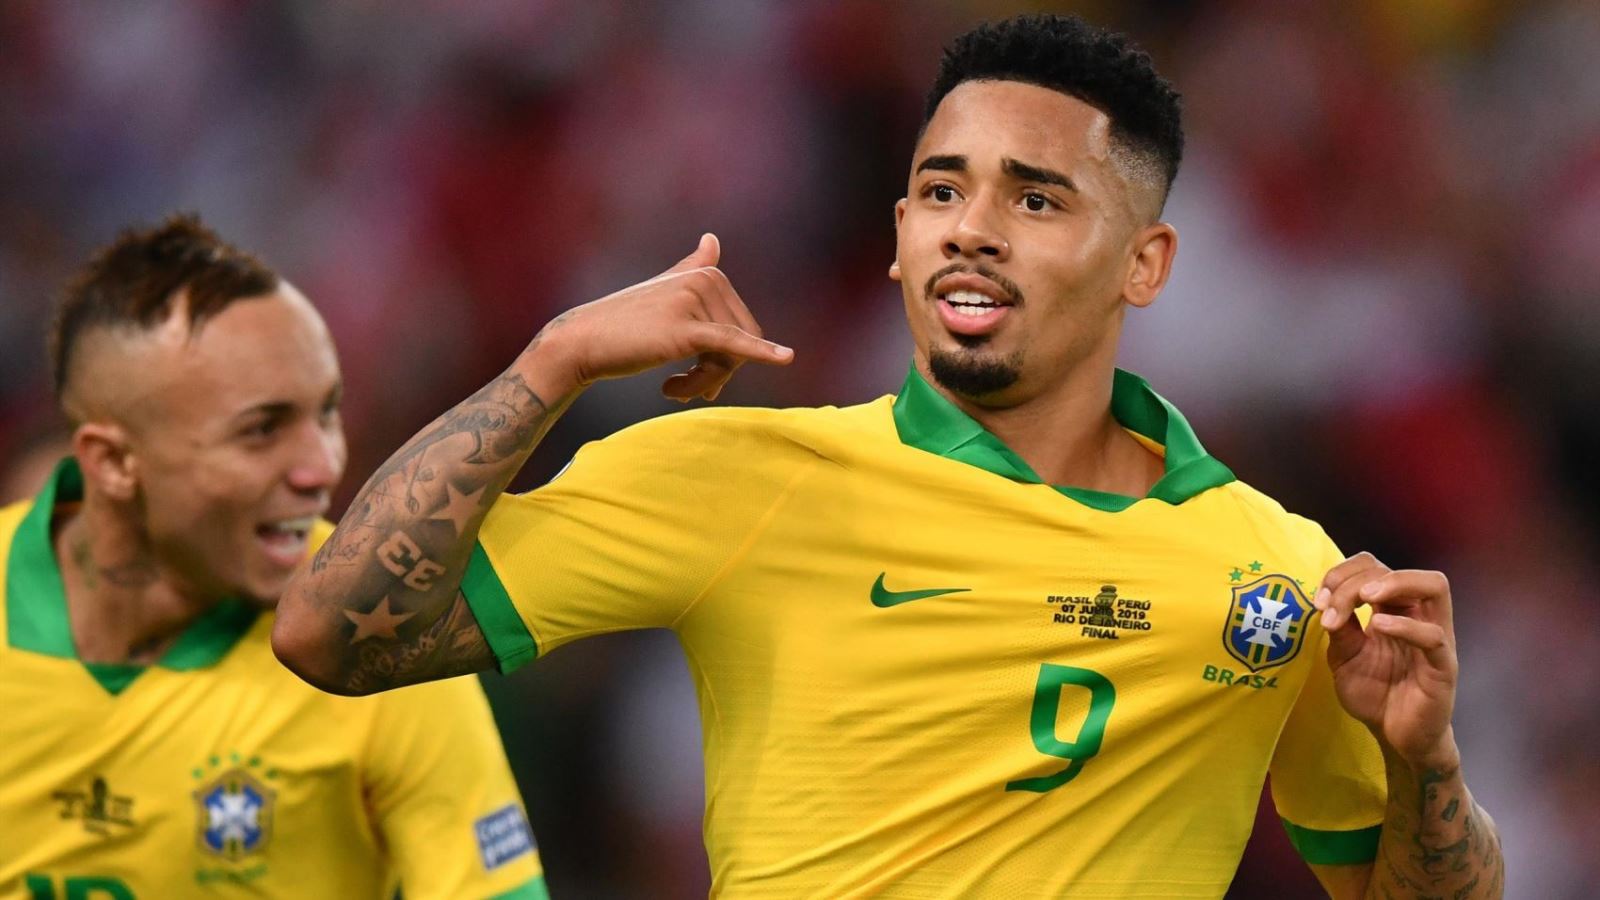 Jesus càng chơi càng hay trong màu áo đội tuyển quốc gia Brazil. Ảnh: Eurosport